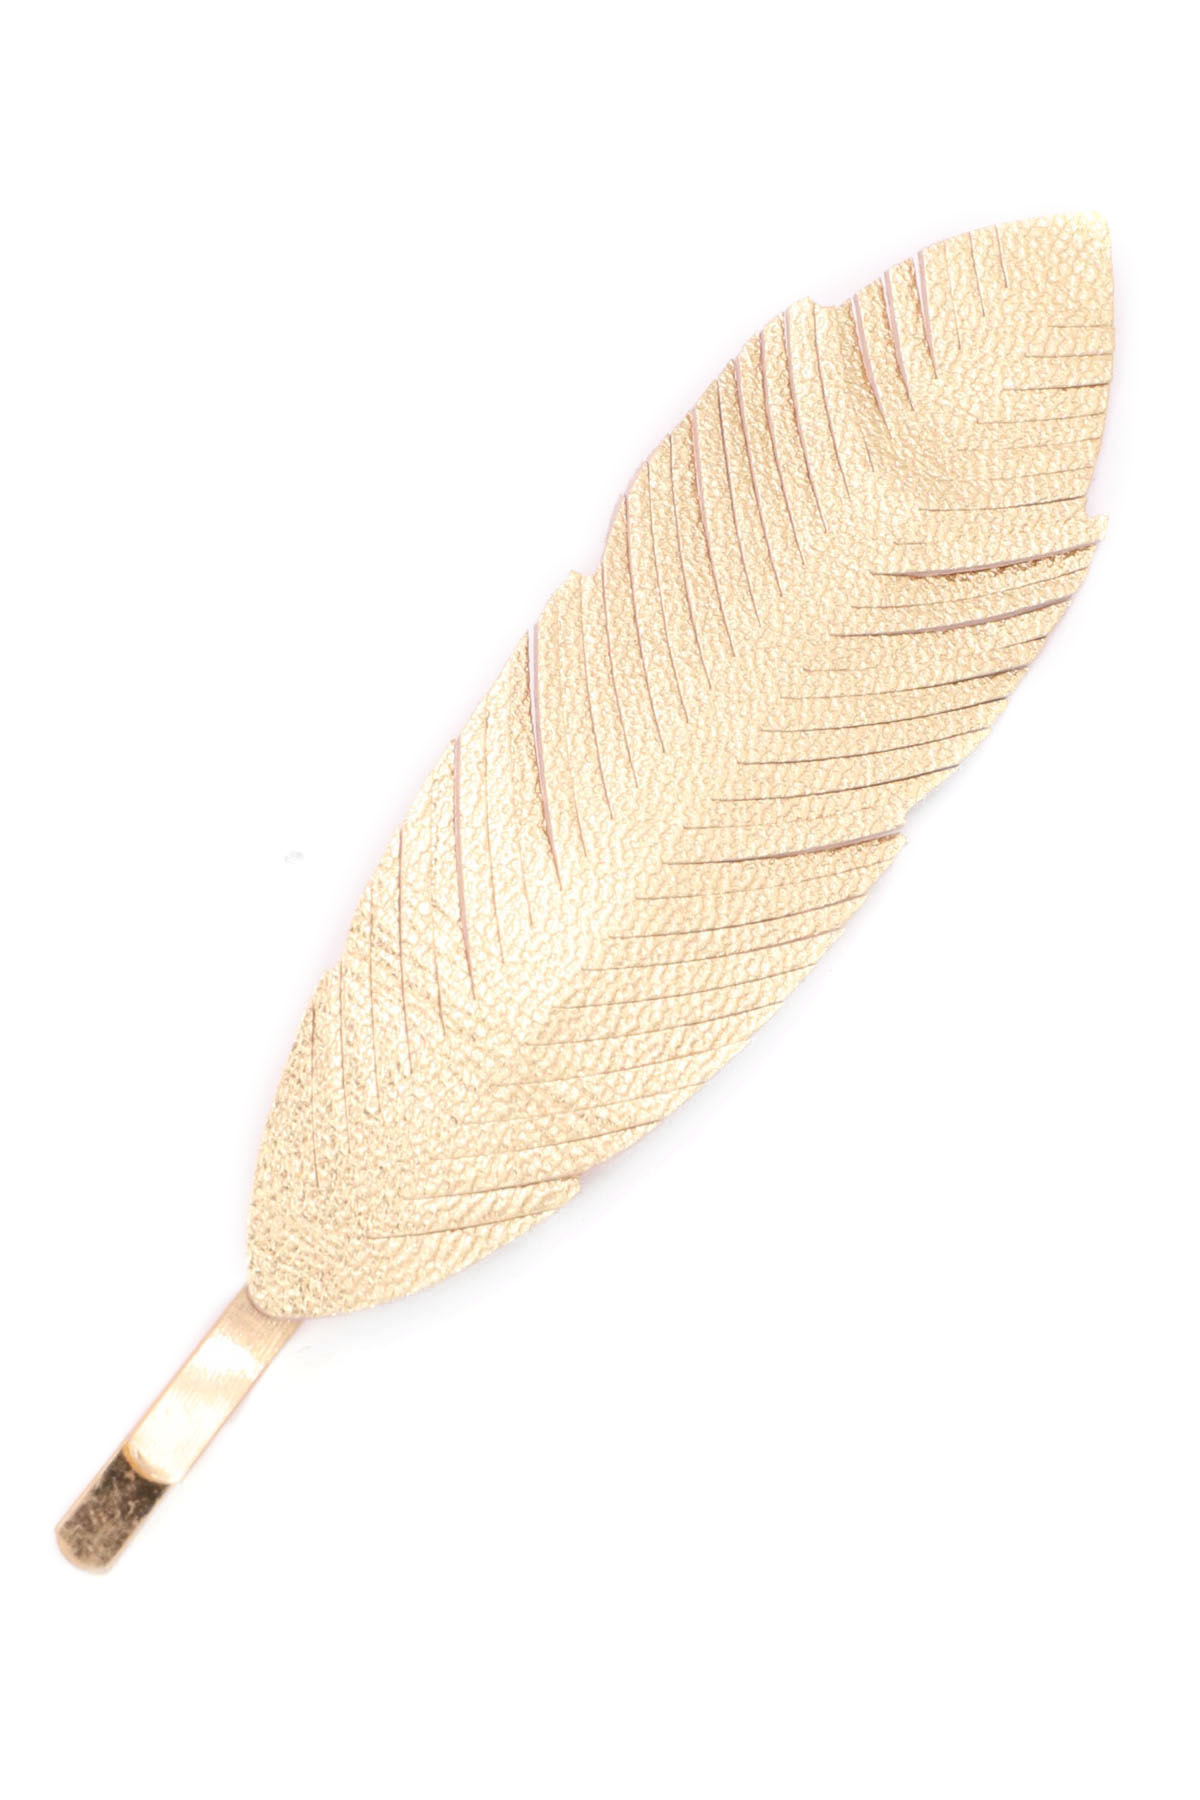 Vintage Hairpins Antique Bronze Hair Pins hair clip for 